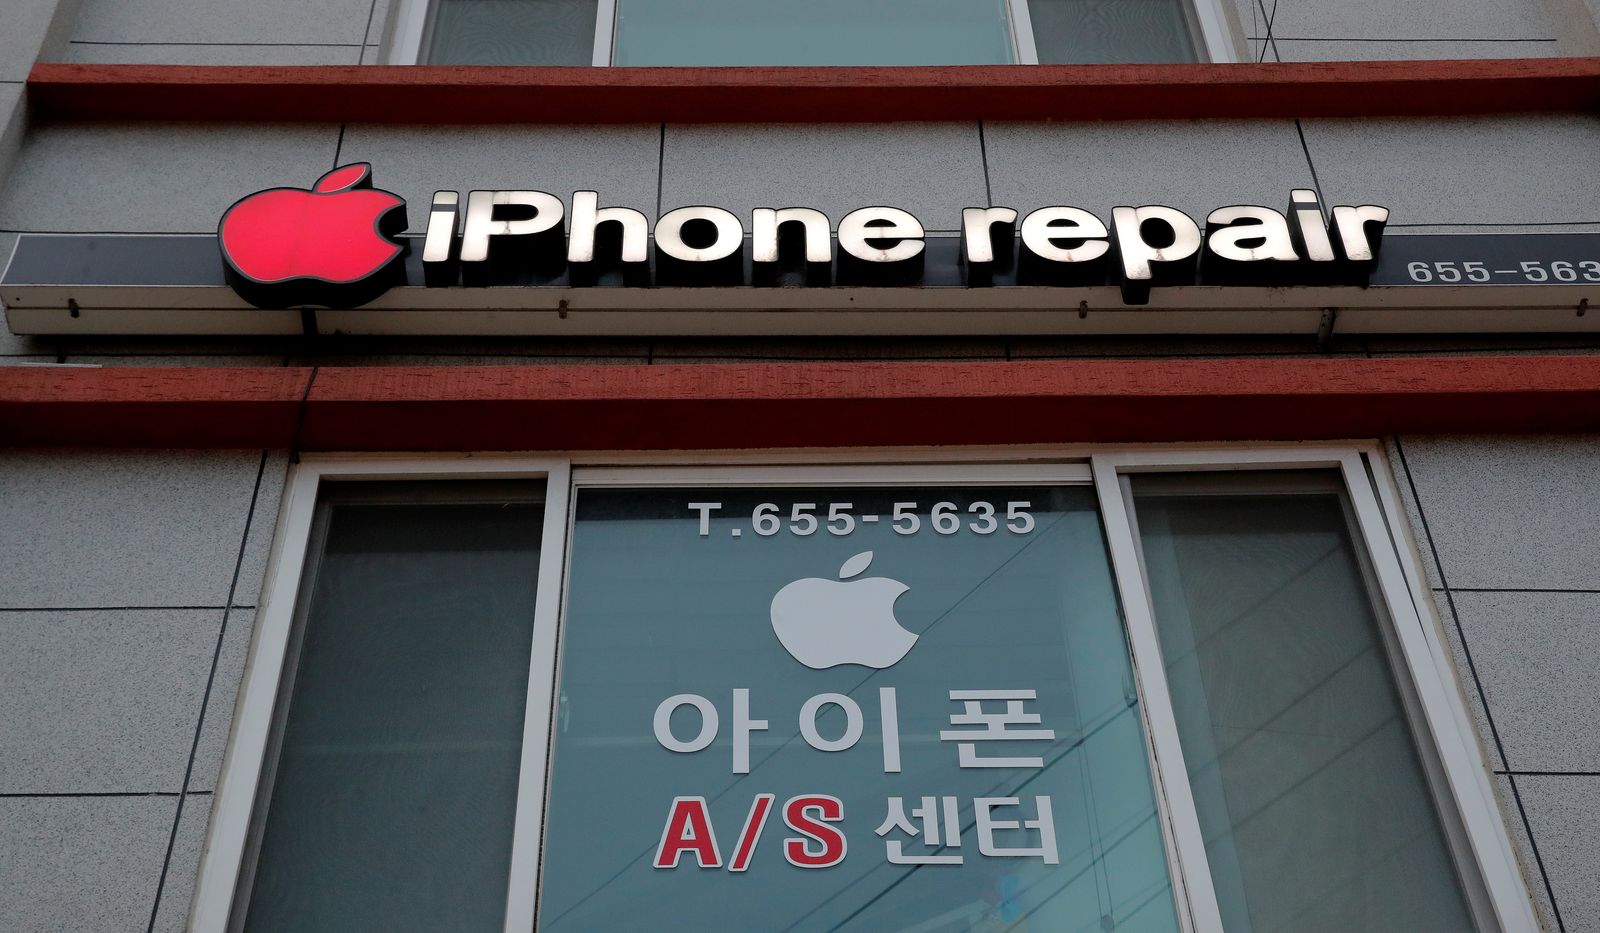 متجر لتصليح هواتف آيفون في كوريا الجنوبية - REUTERS